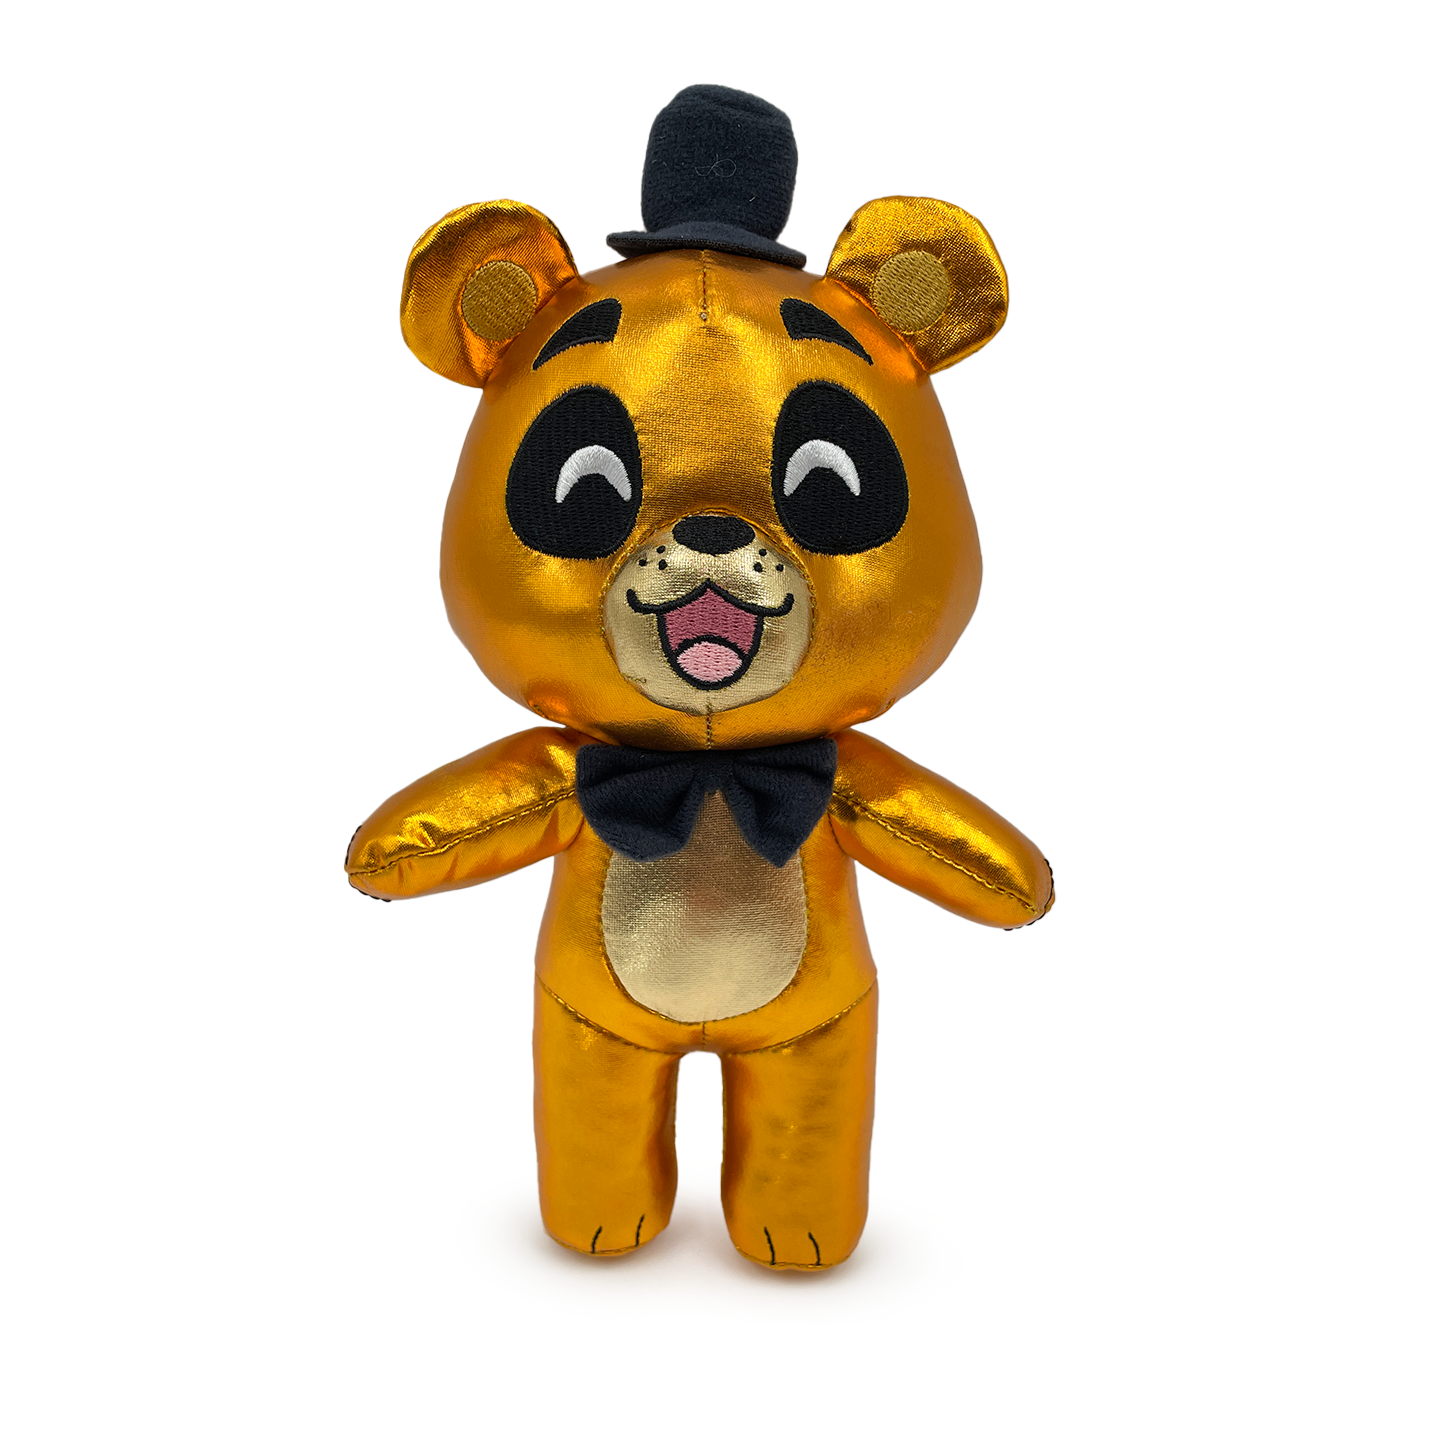  Ycixri FNAF Golden Freddy Plush Toy Suitable for